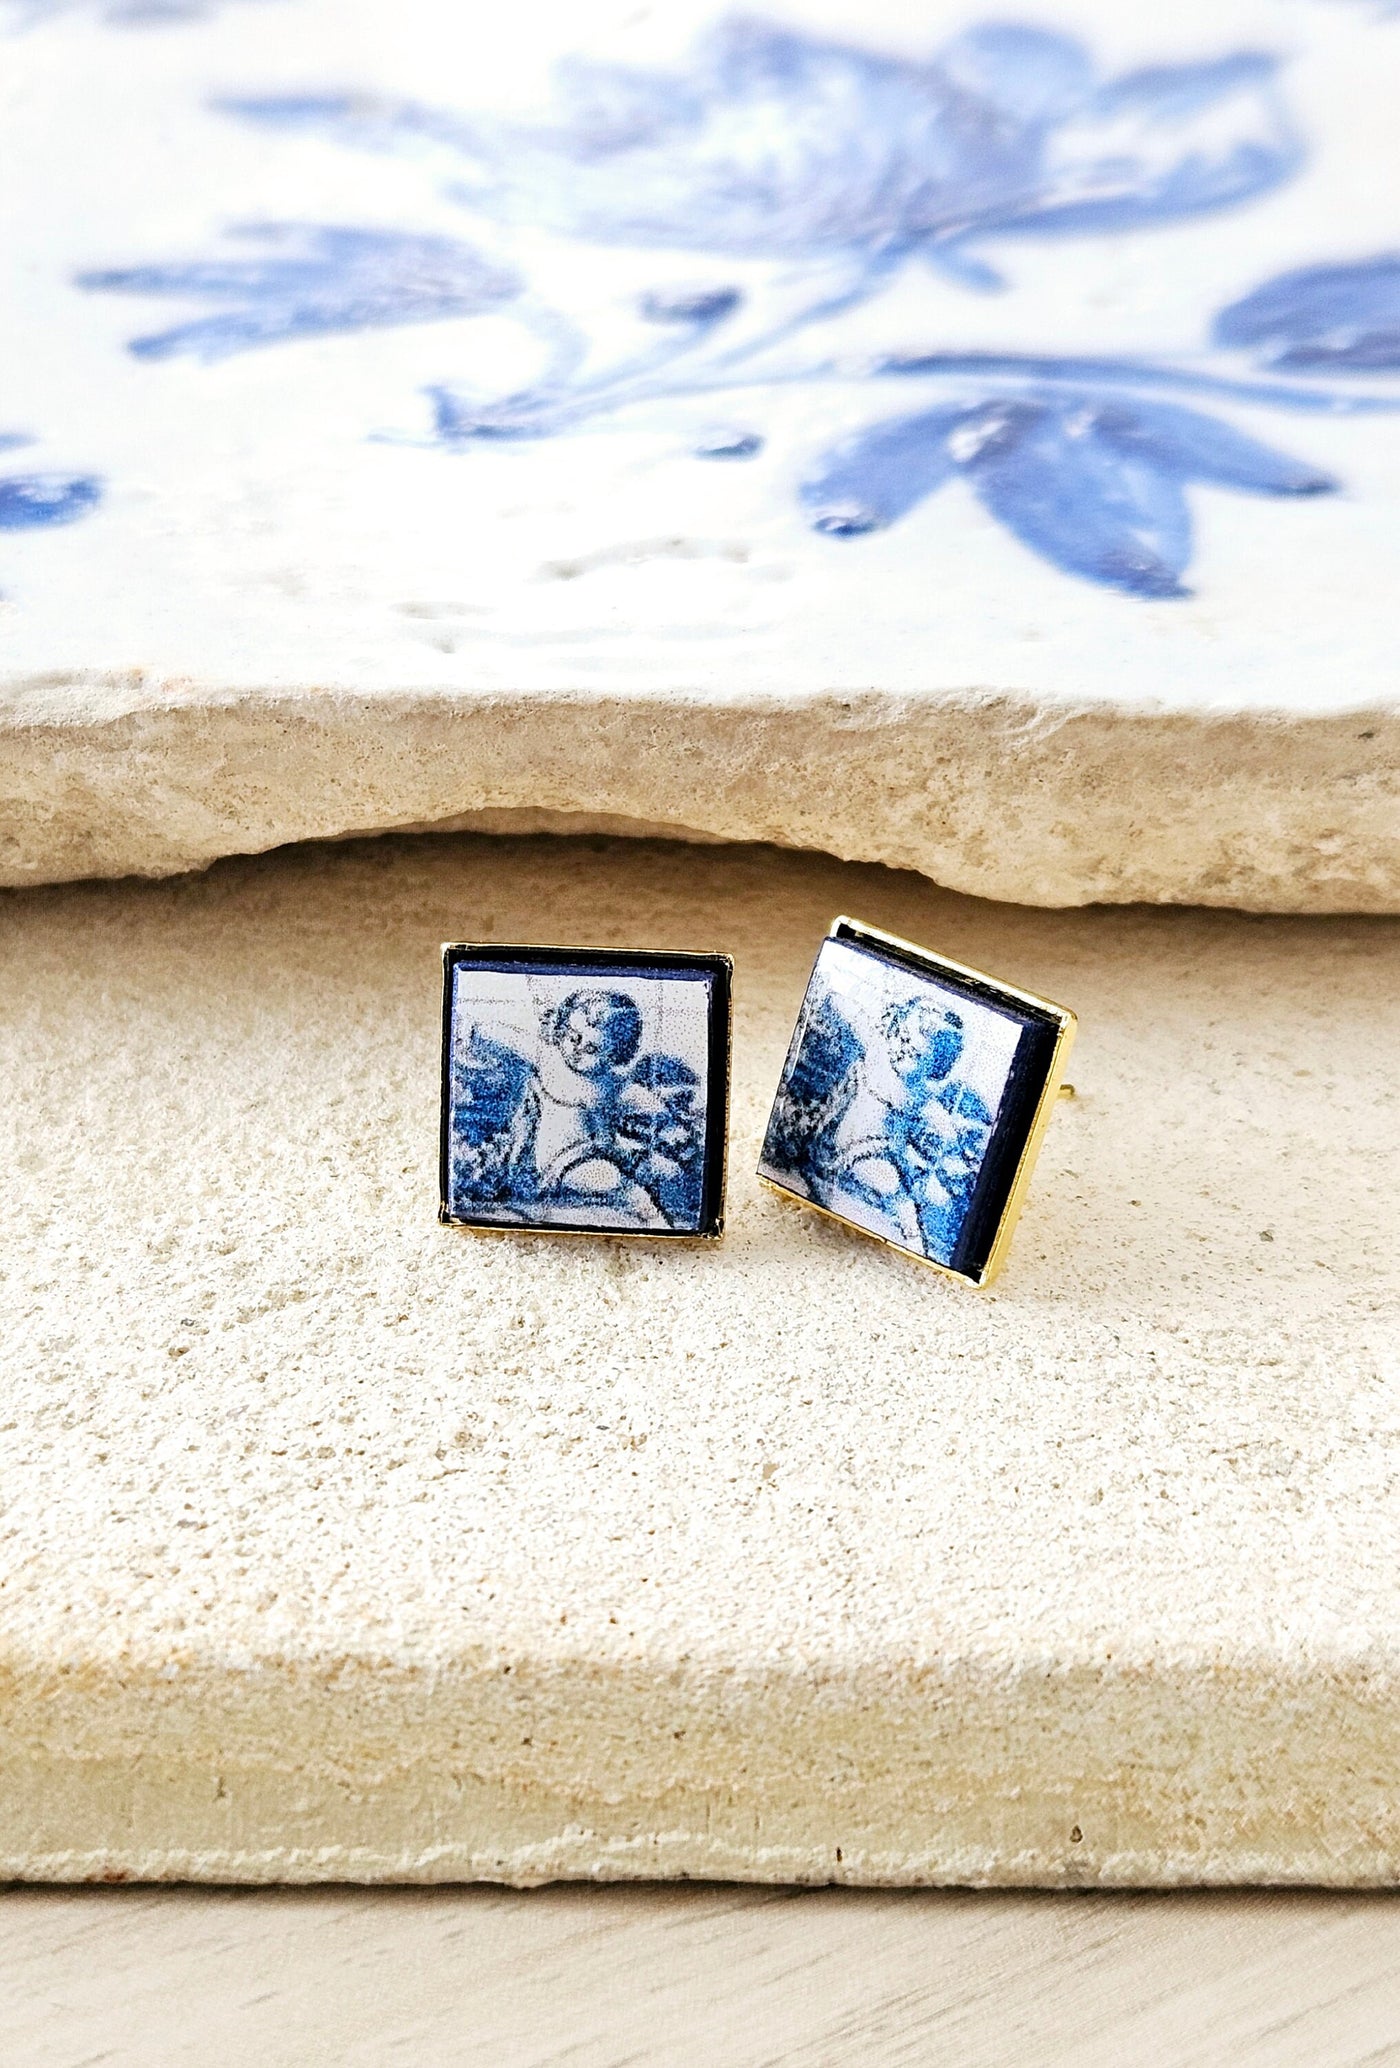 Angel Tile Earring Portugal Antique Azulejo Tiles Delft Cherub Post Earring Majolica Blue White Gold Tile Religious Gift Angel Memorial